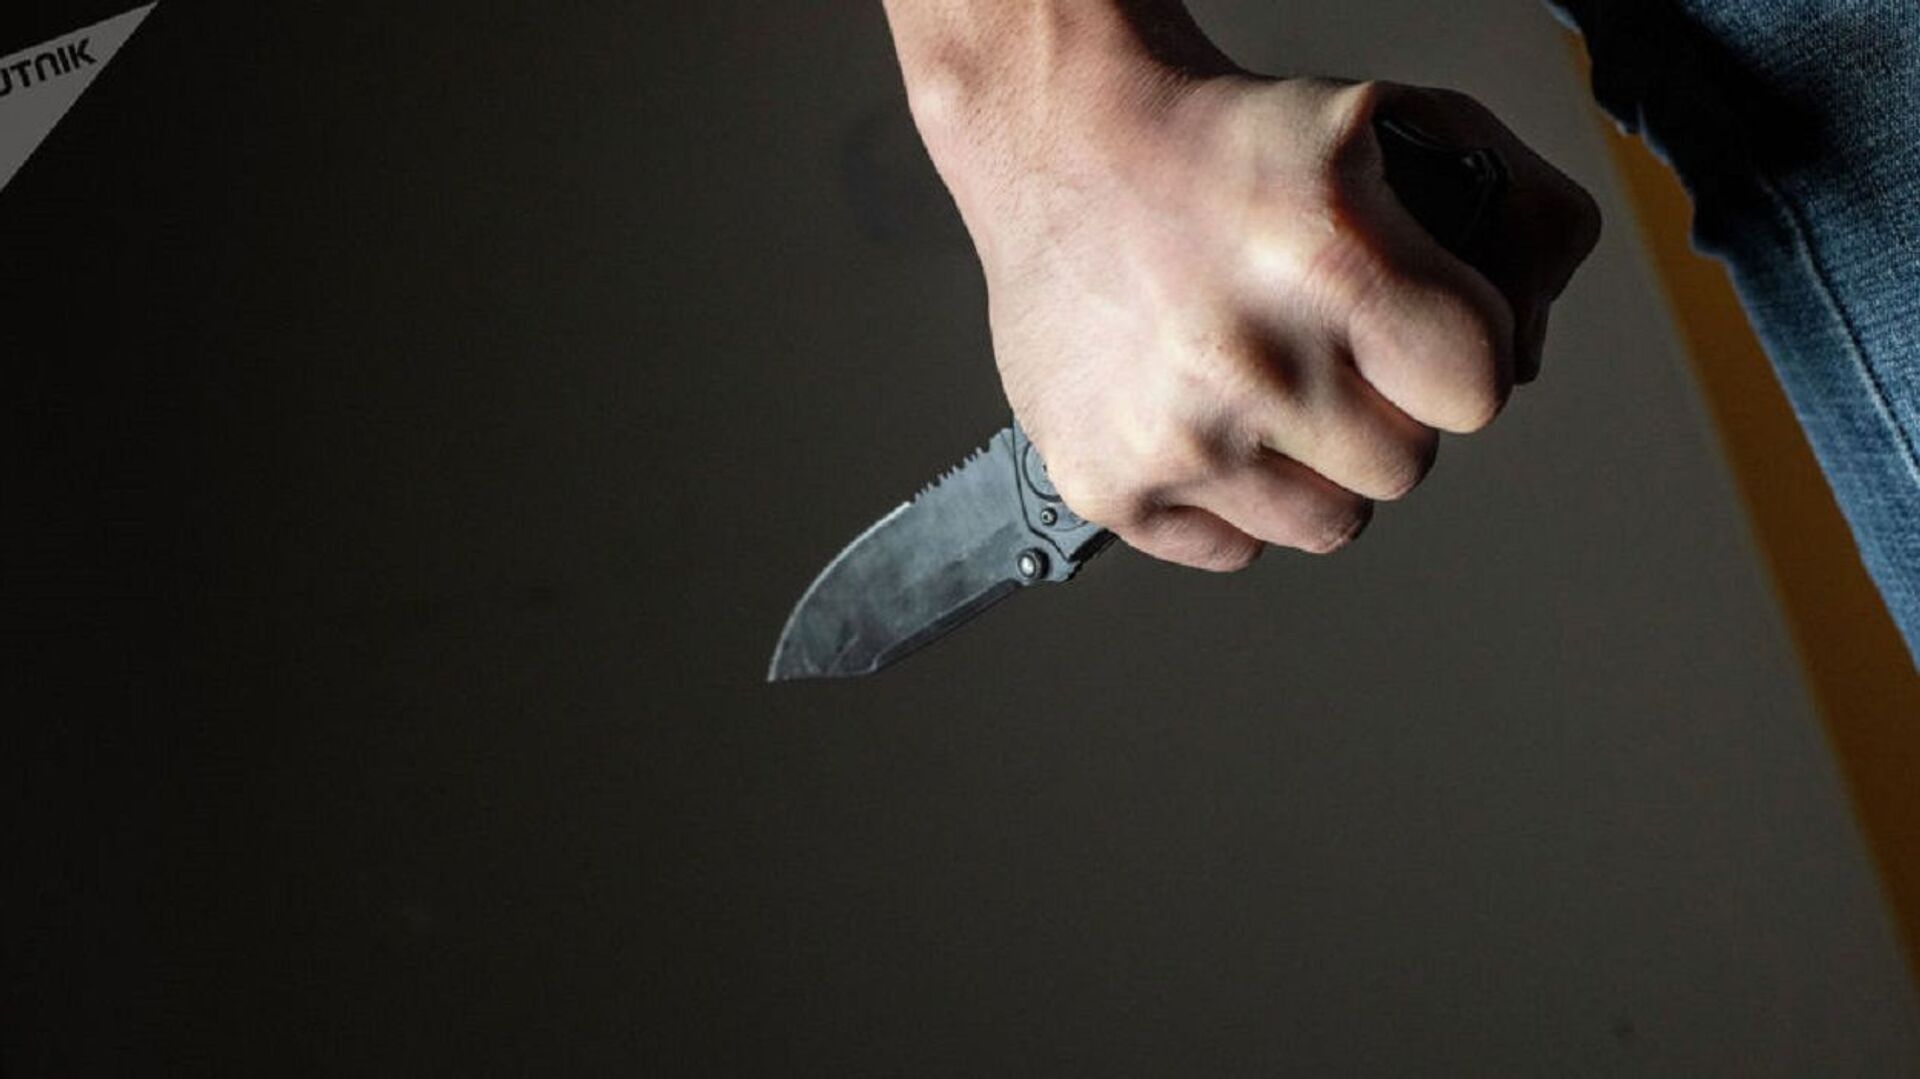 В Гедабейском районе 52-летний мужчина получил ножевое ранение